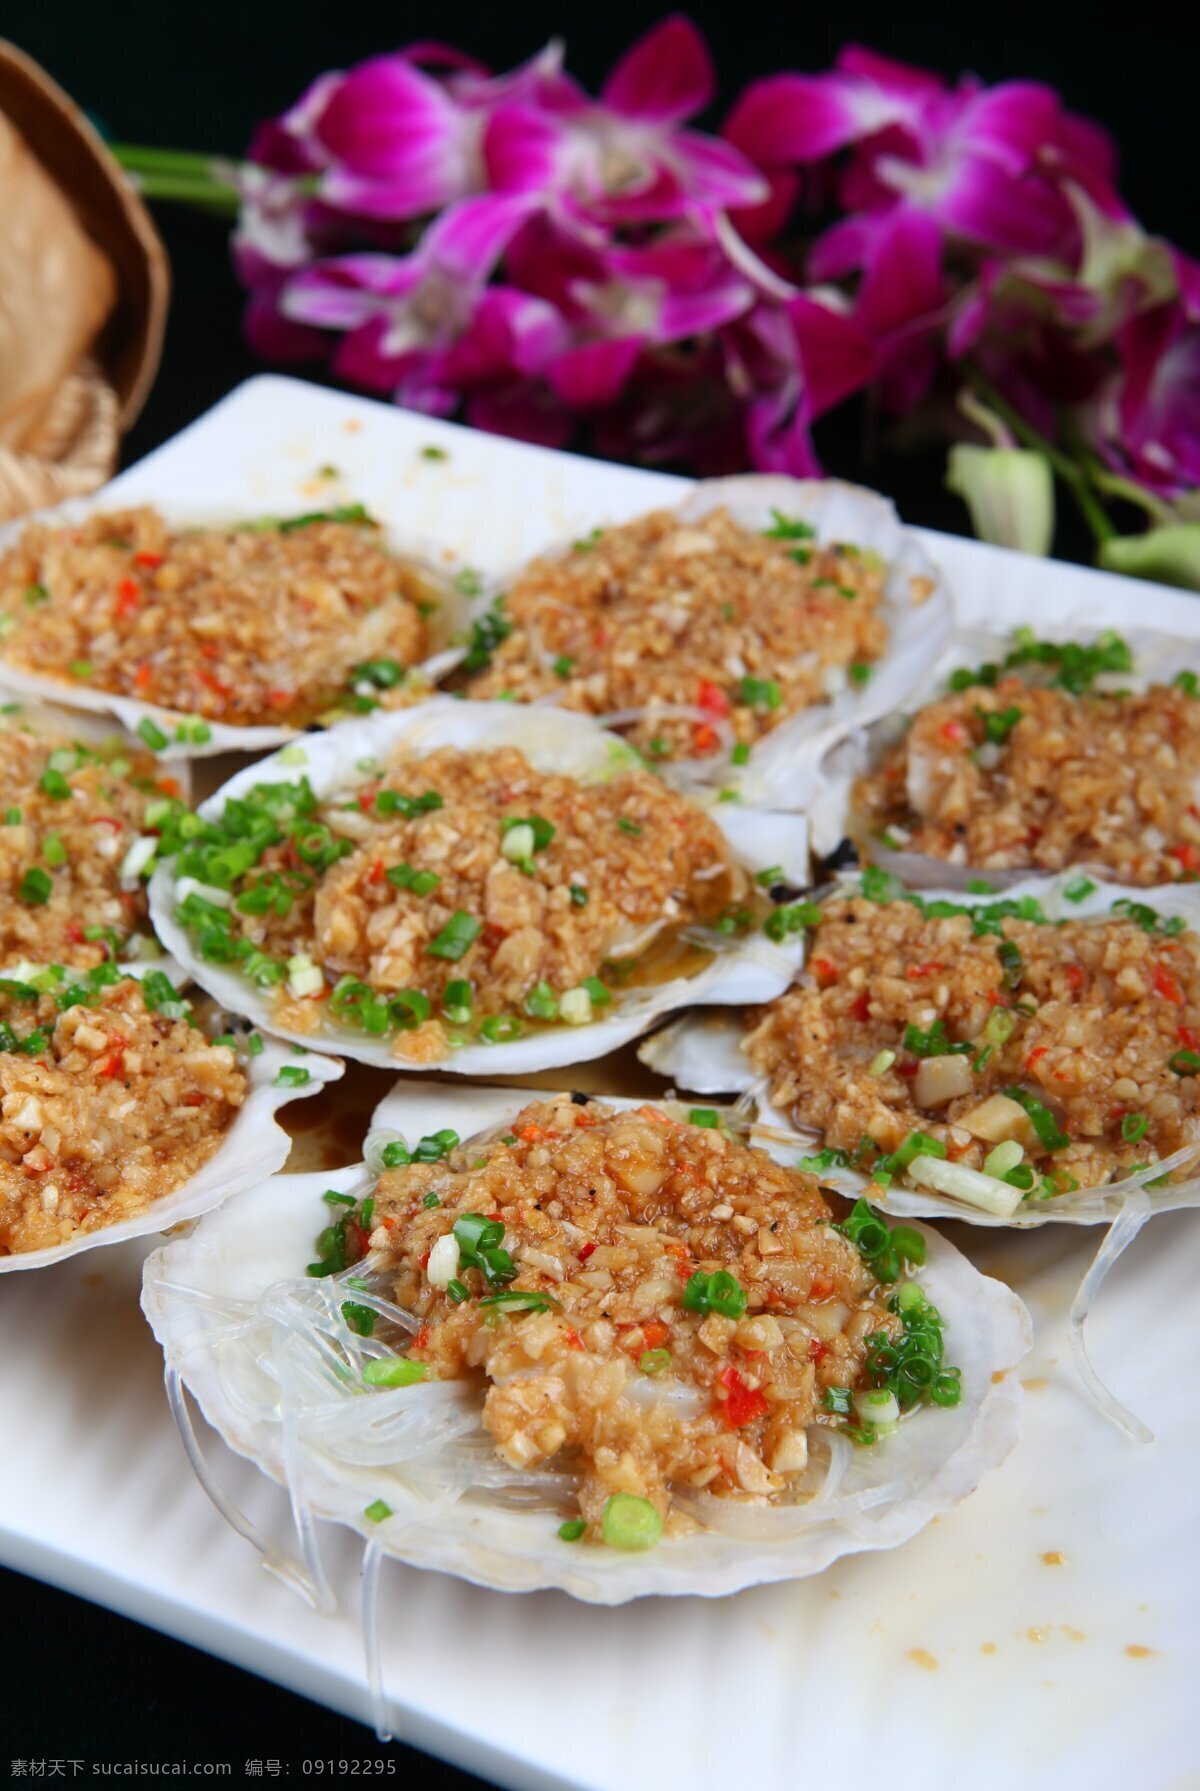 烤扇贝 海鲜 海鲜姿造 火锅 涮食海鲜 菜谱图片 菜牌 美食 餐饮美食 传统美食